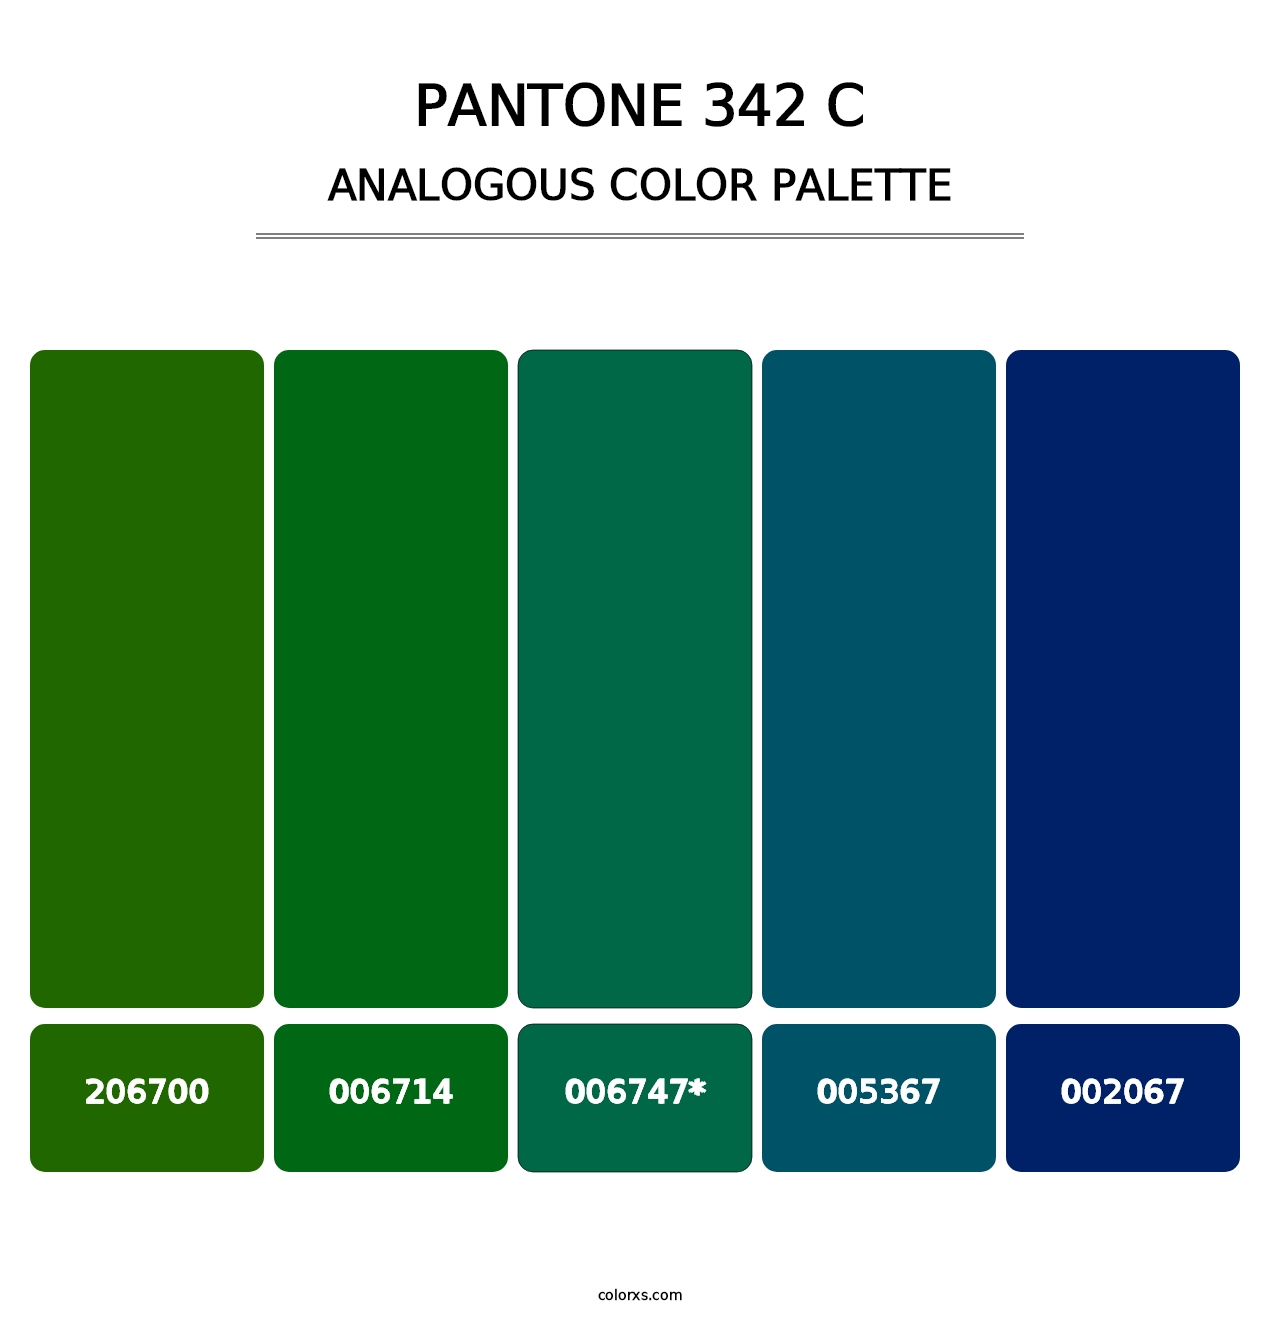 PANTONE 342 C - Analogous Color Palette